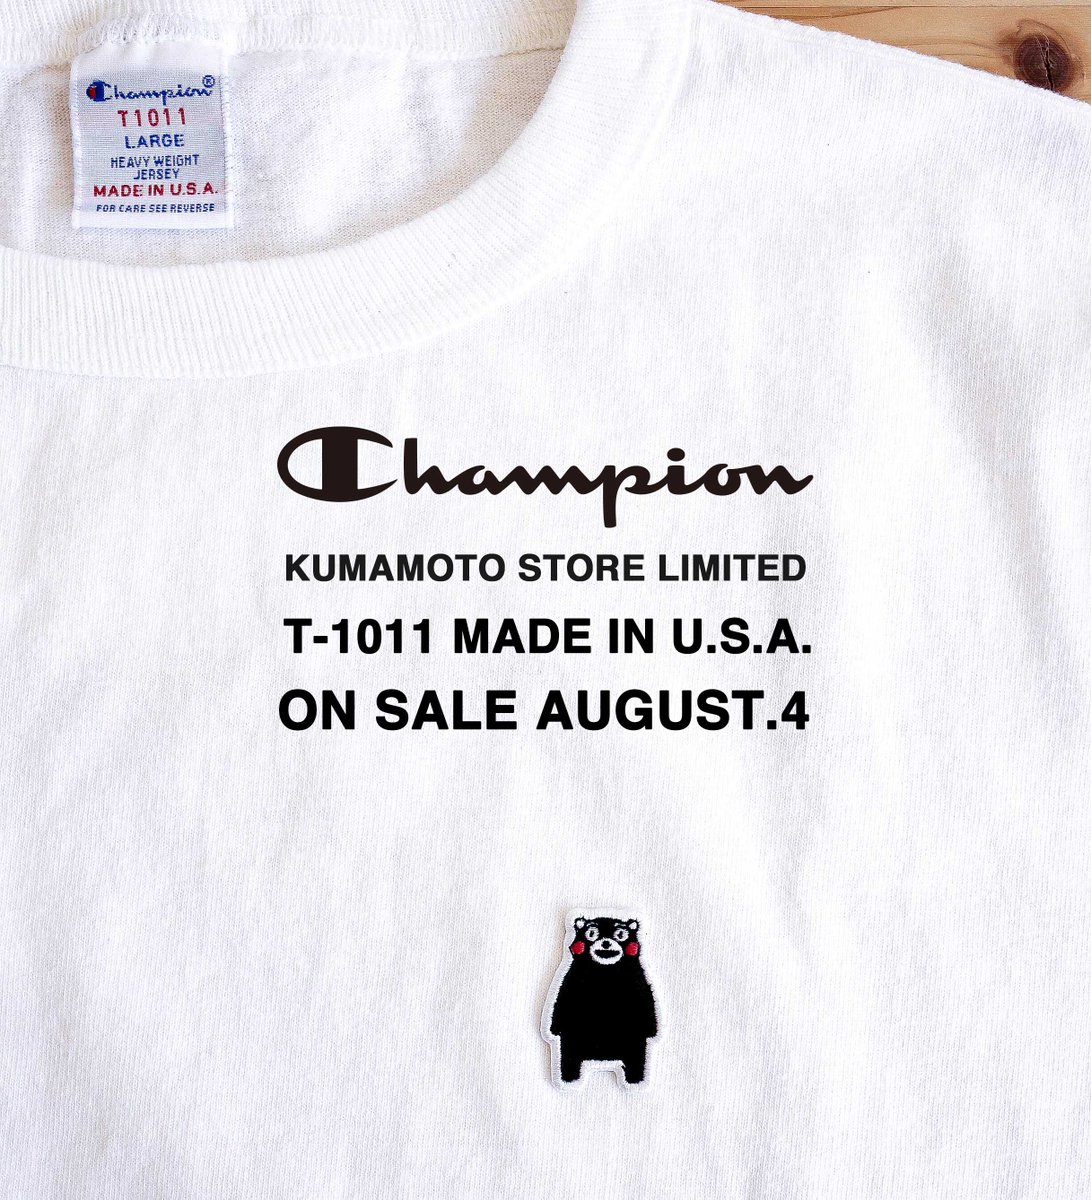 Champion Japan 熊本県 の営業部長 くまモン と Champion のusa製tシャツ T1011 がコラボ 胸元に くまモンのワッペンをワンポイントにあしらっており 全国でもcocosa熊本店でしかご購入頂けない限定商品です カラーはホワイト1色 Ecサイトでは